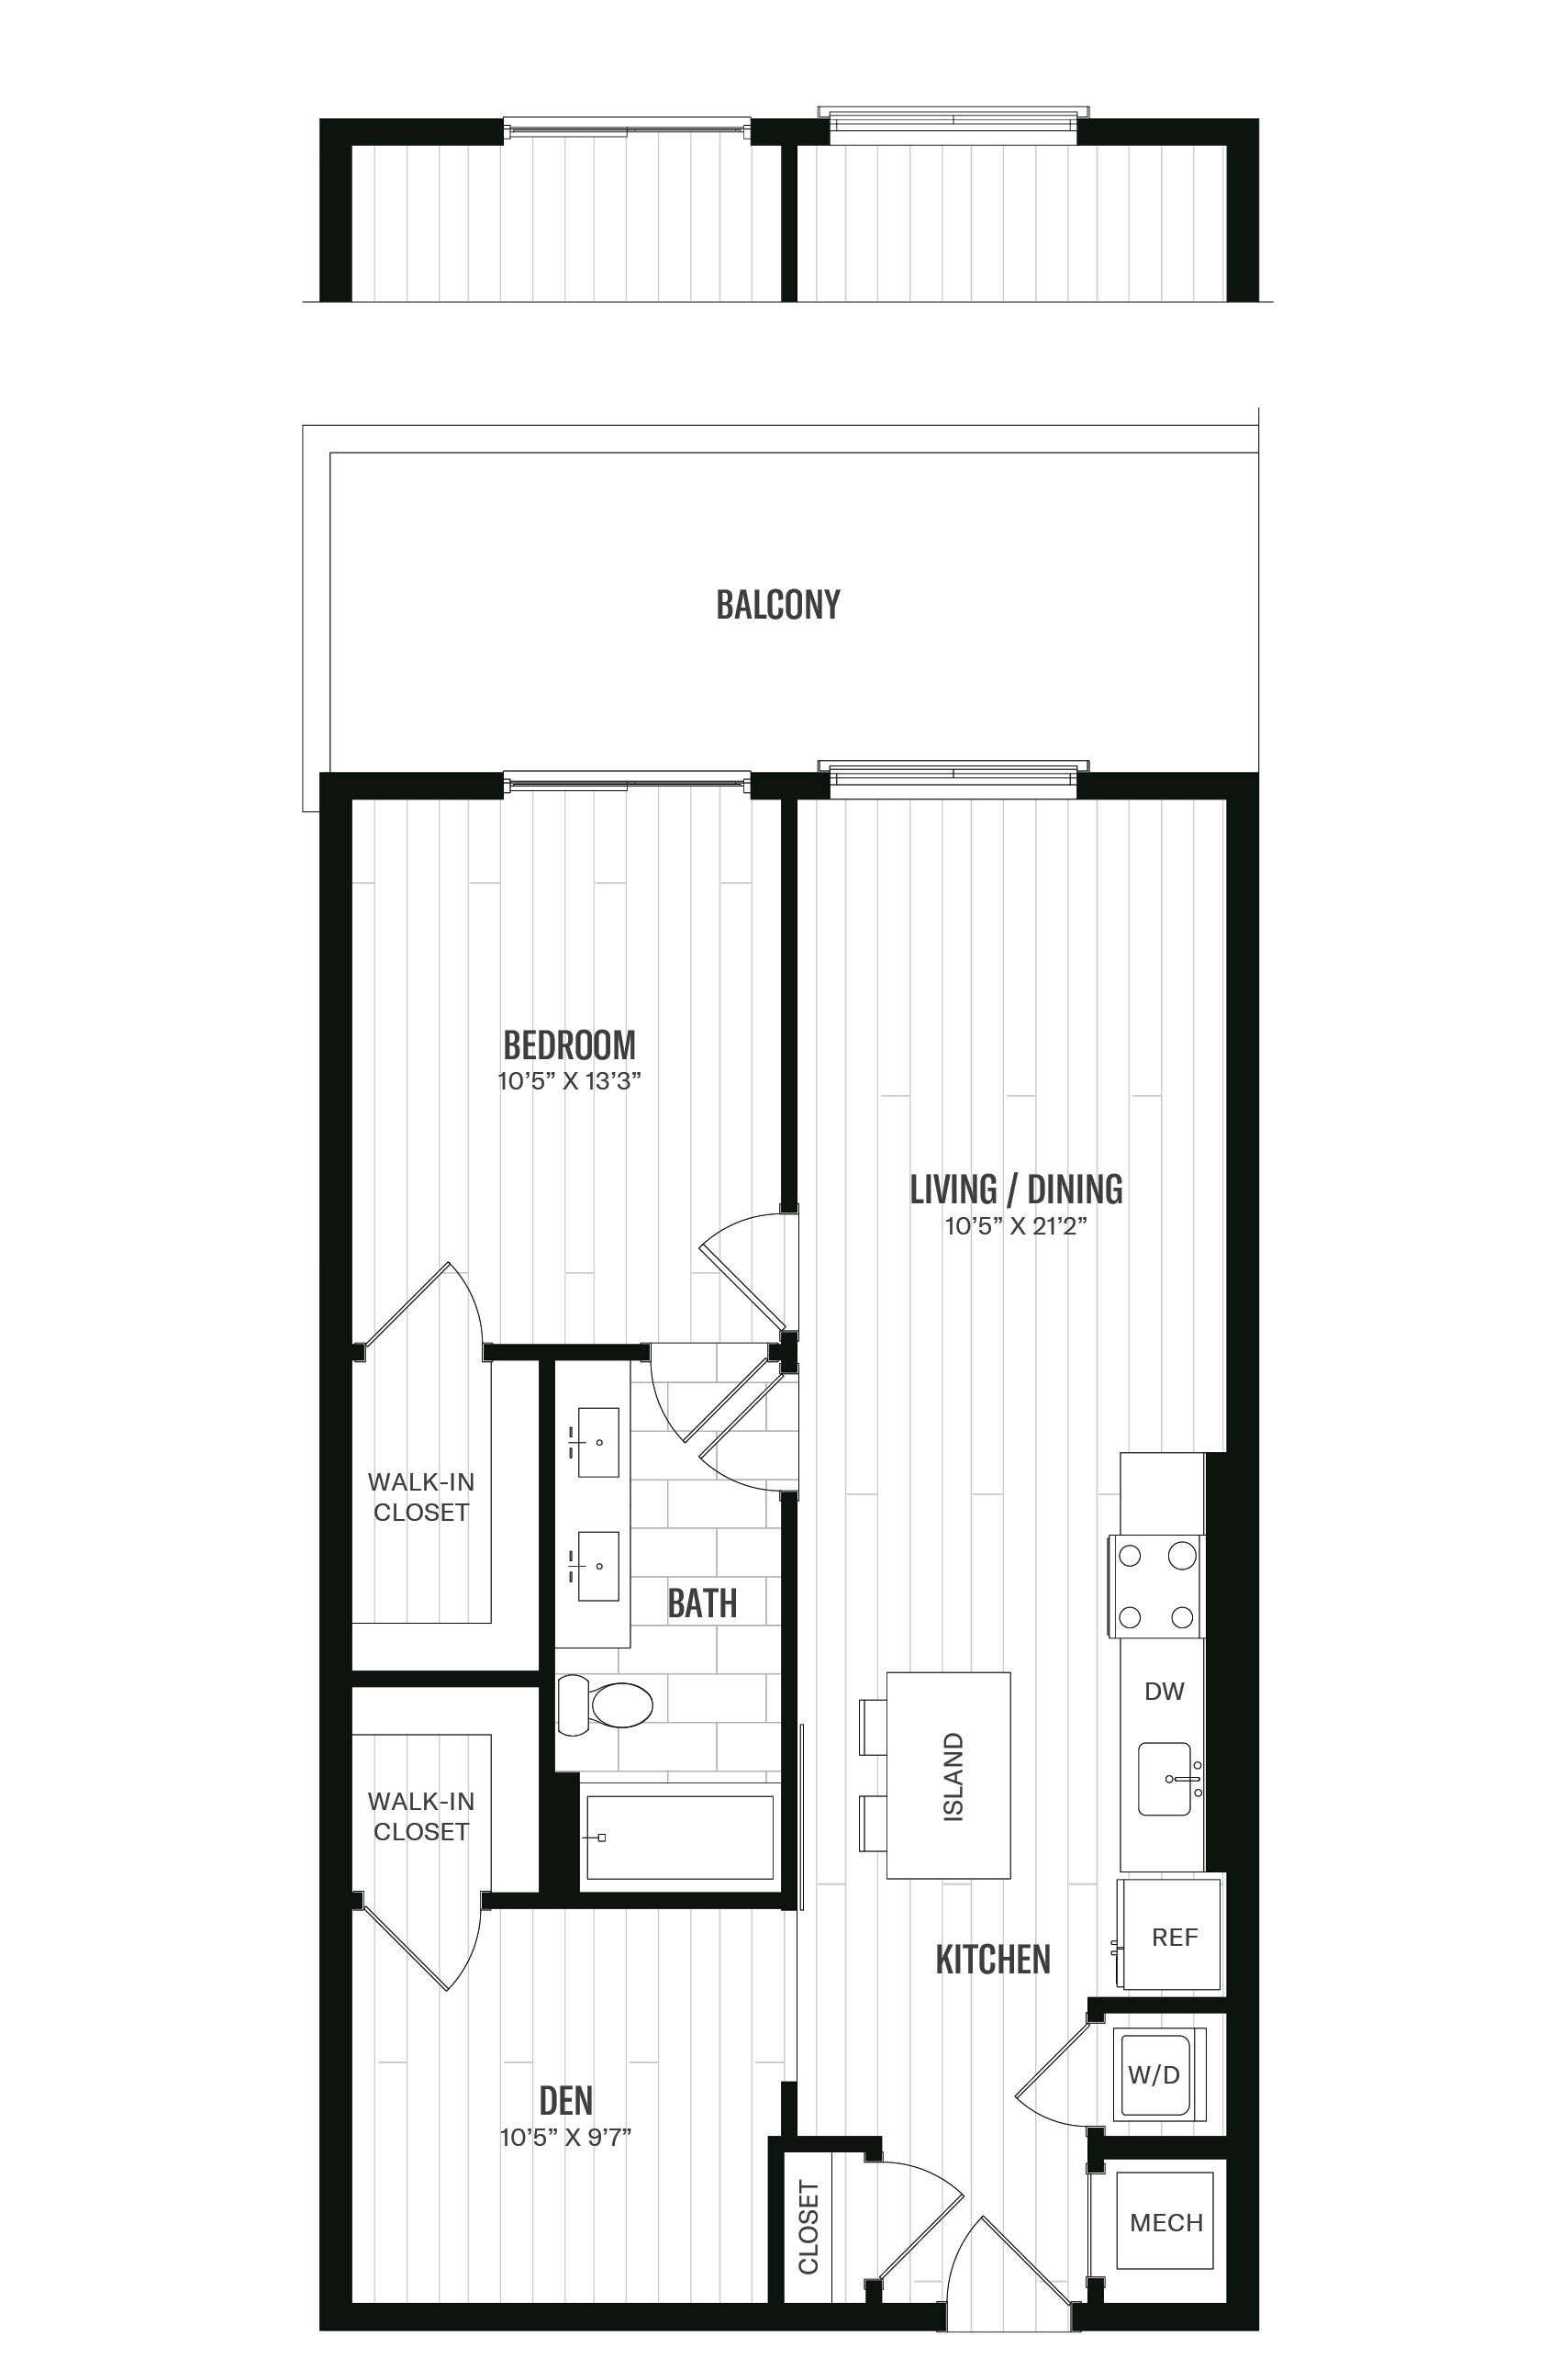 Floorplan image of unit 630